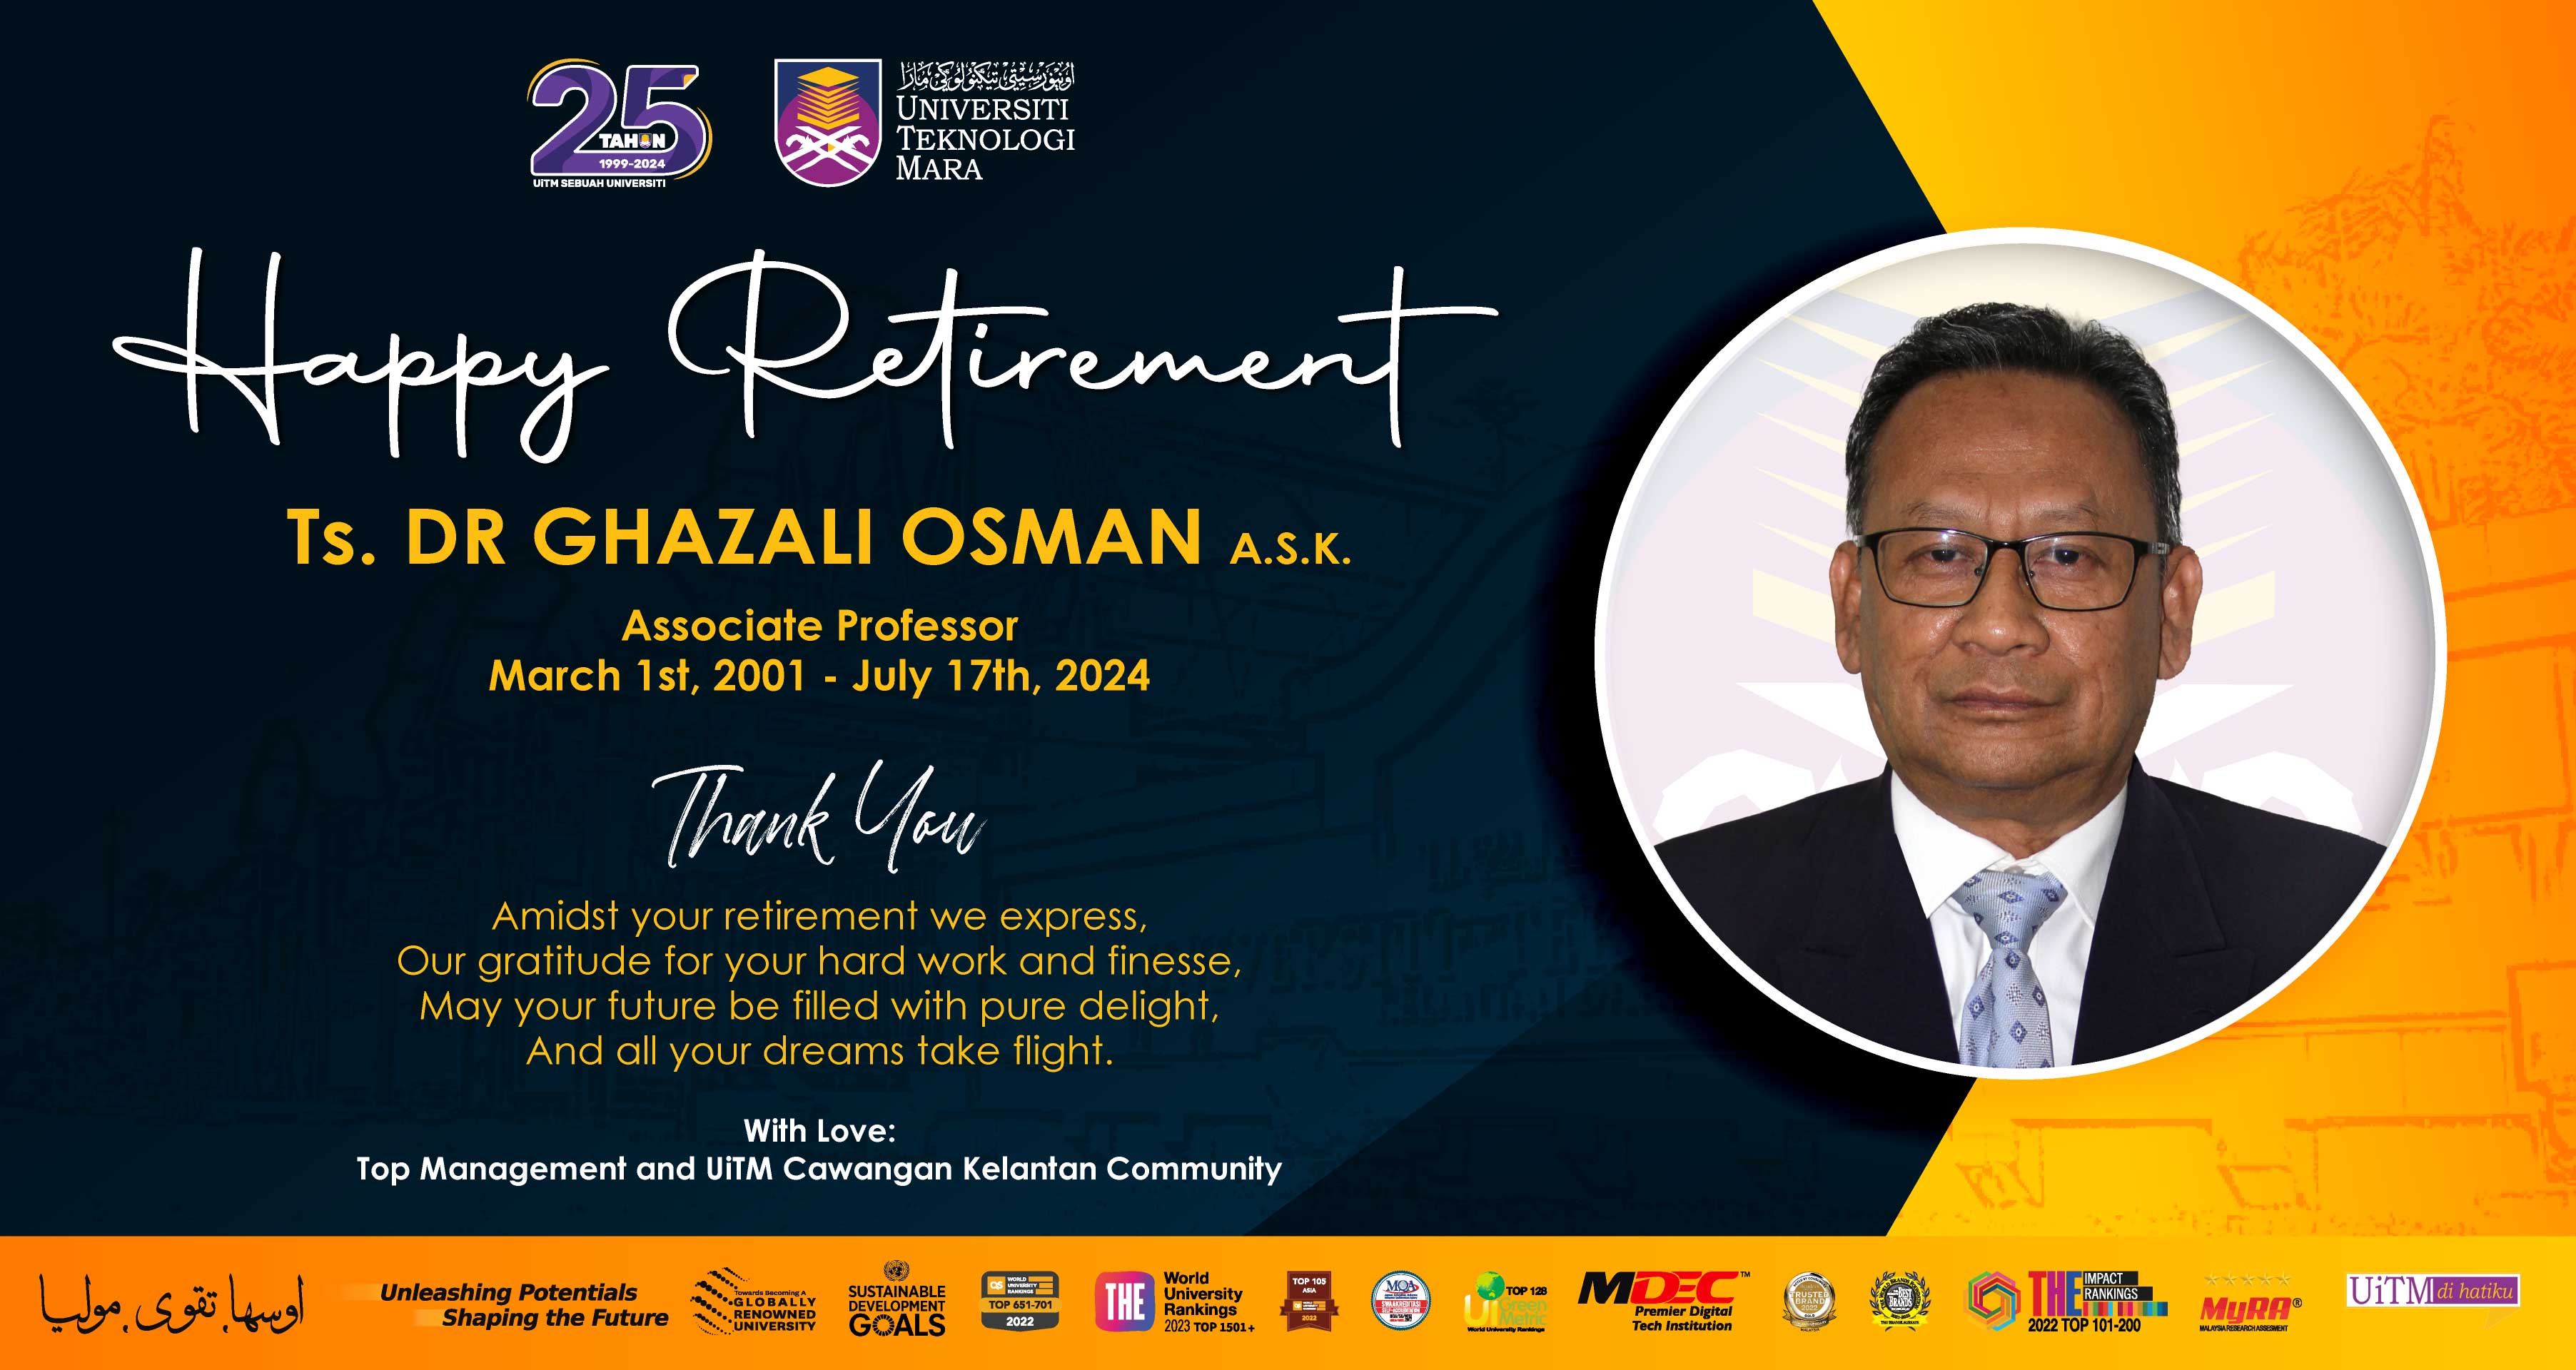 Happy Retirement, Associate Professor Ts. Dr Ghazali Osman A.S.K